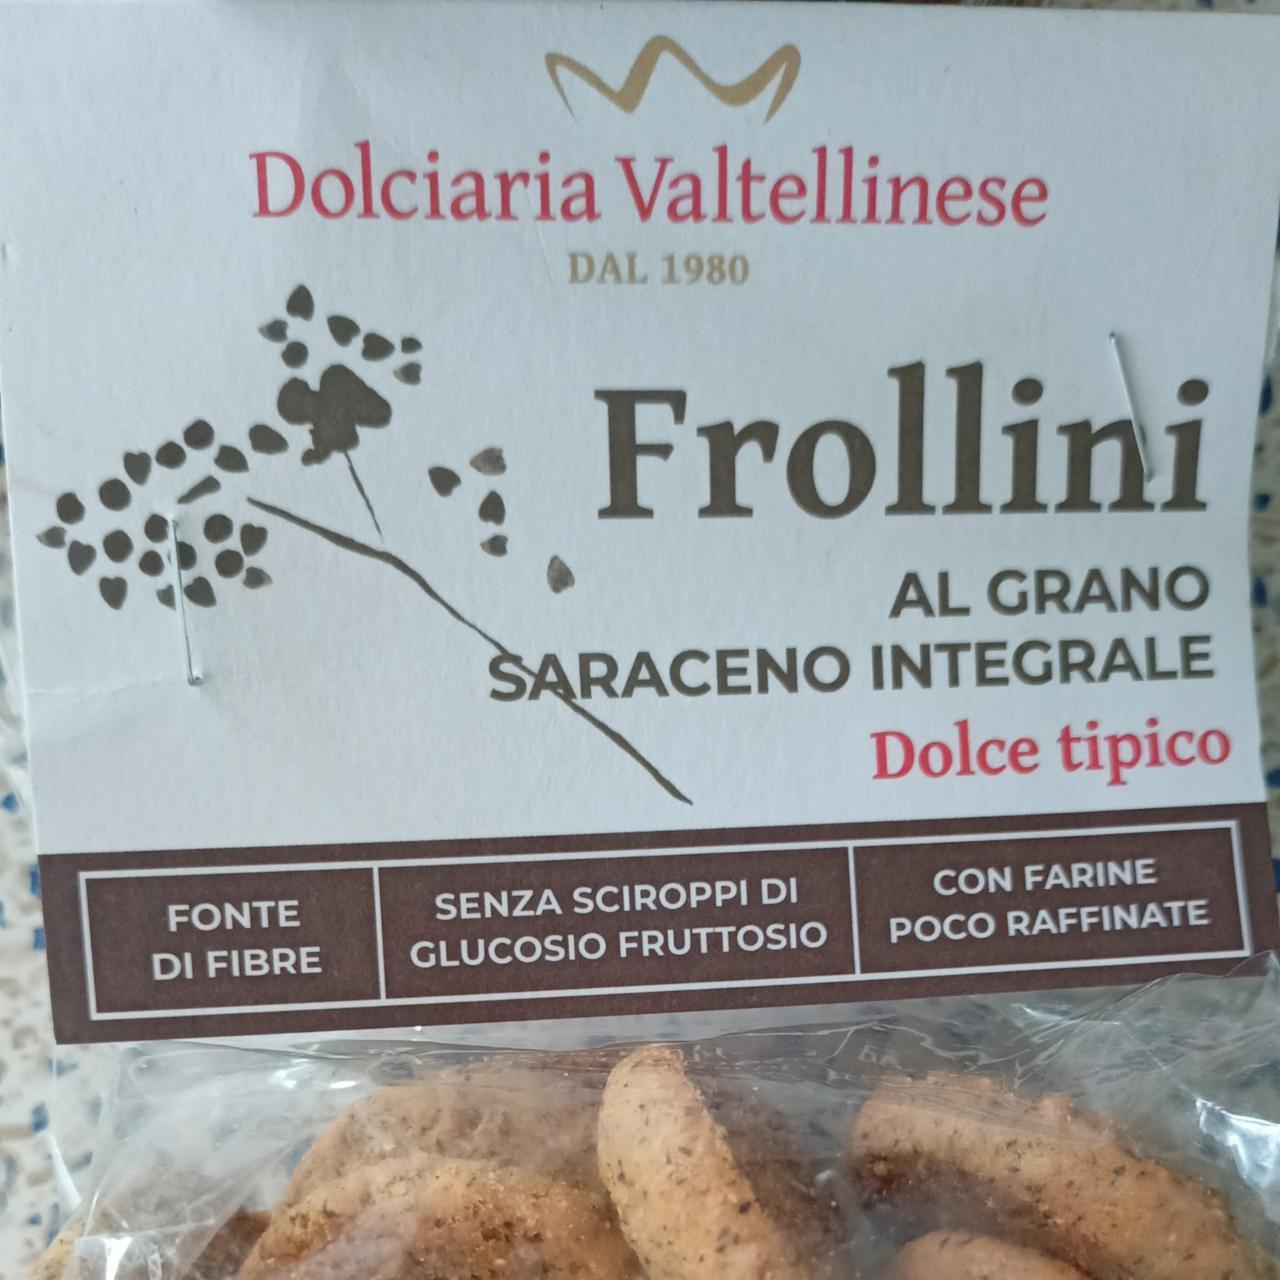 Fotografie - Frollini al grano saraceno integrale Dolciaria Valtellinese